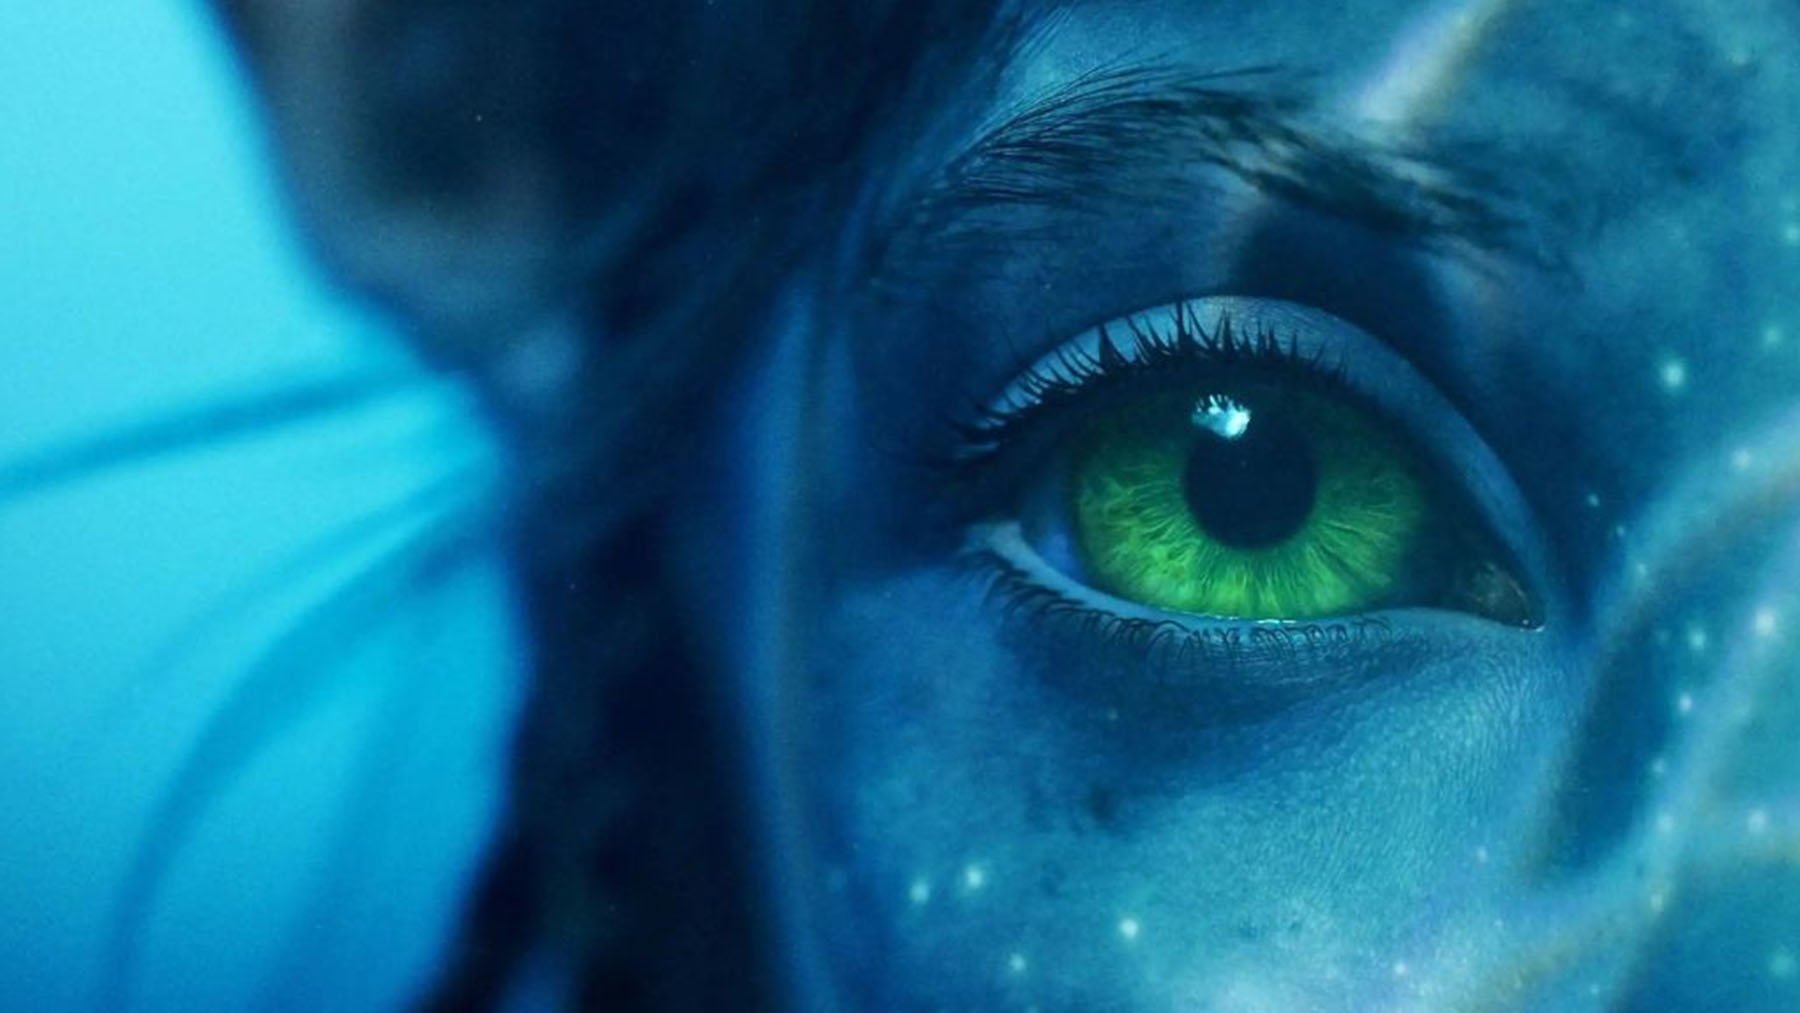 Estrenos: La secuela de Avatar planea conquistar la taquilla mundial